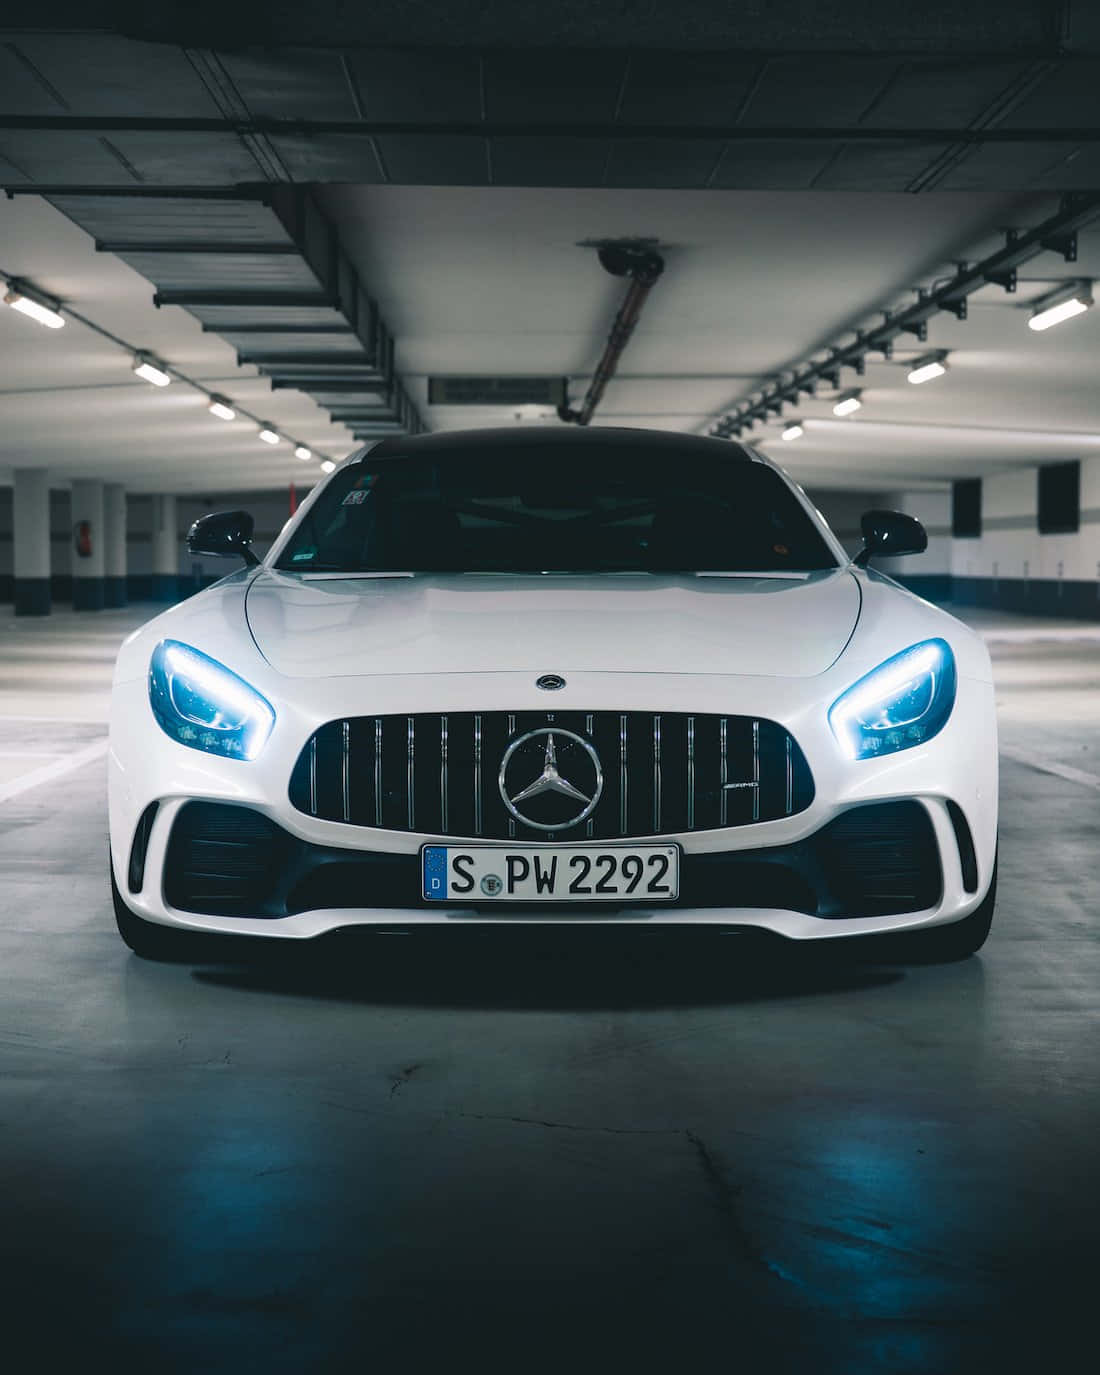 Mercedes Amg Gt Parked In A Garage